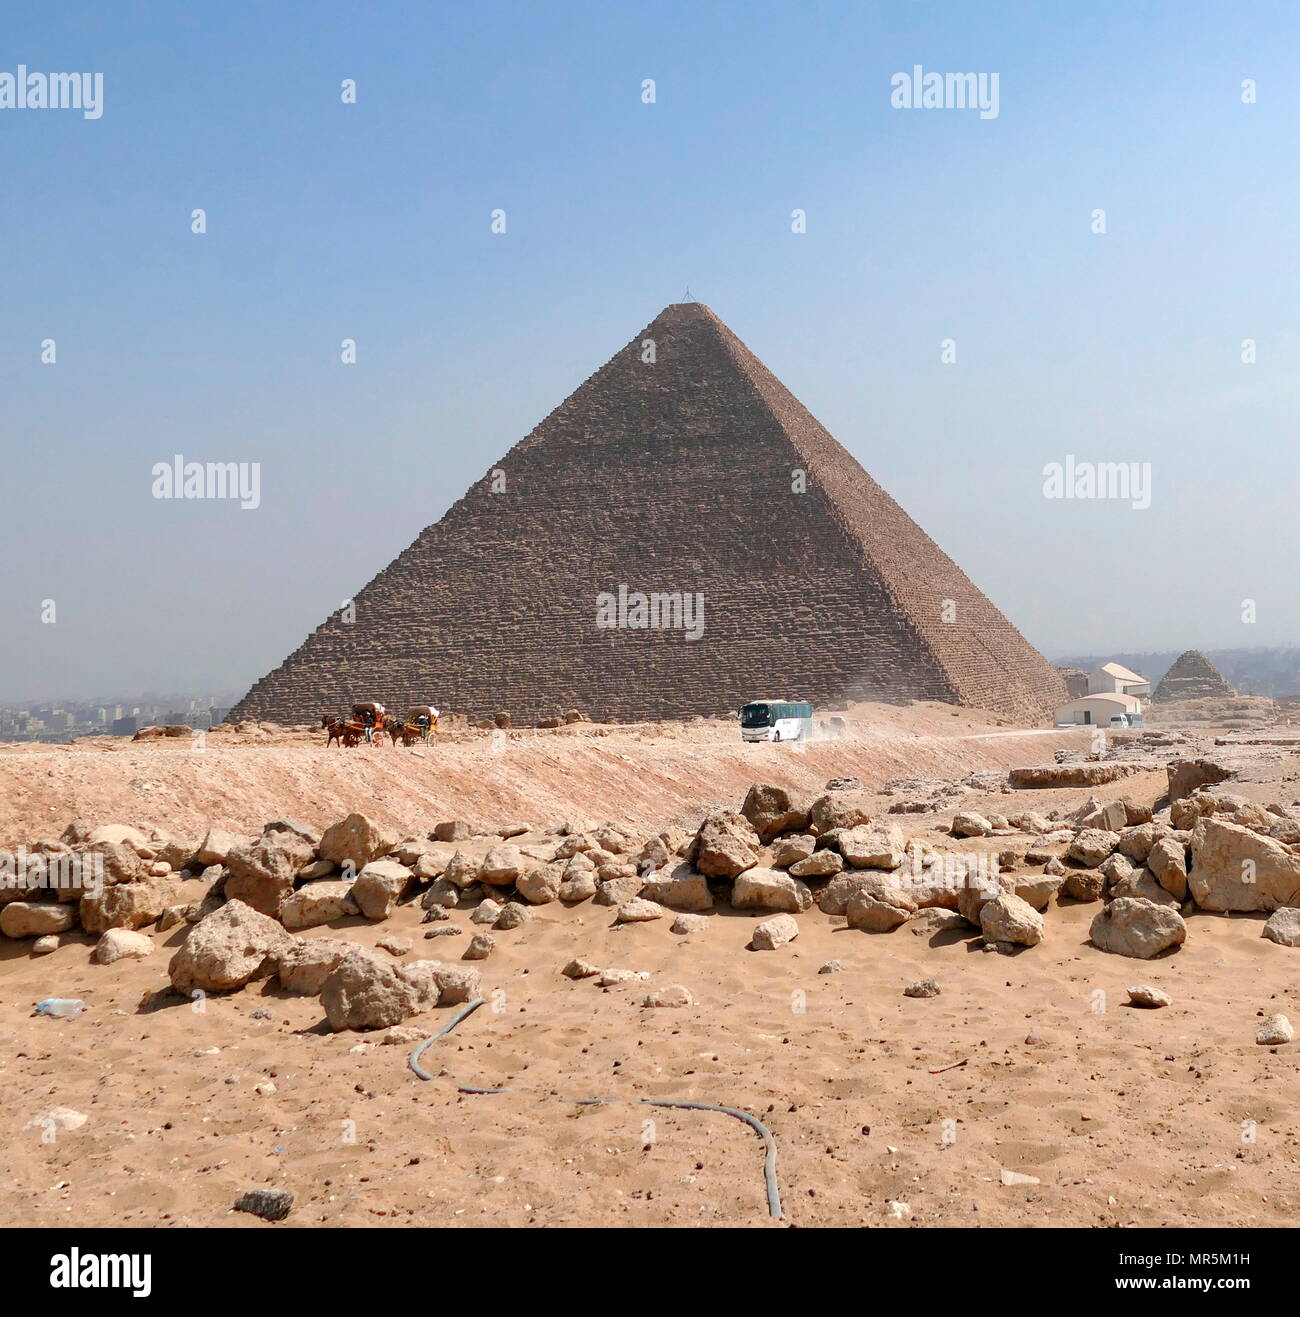 La Gran Pirámide de Giza (Pirámide de Khufu o pirámide de Keops); la más antigua y más grande de las tres pirámides en el complejo de la pirámide de Giza, en Egipto. Es la más antigua de las siete maravillas del mundo antiguo, y la única que permanecen prácticamente intactos. Completado alrededor de 2560 AC. Foto de stock